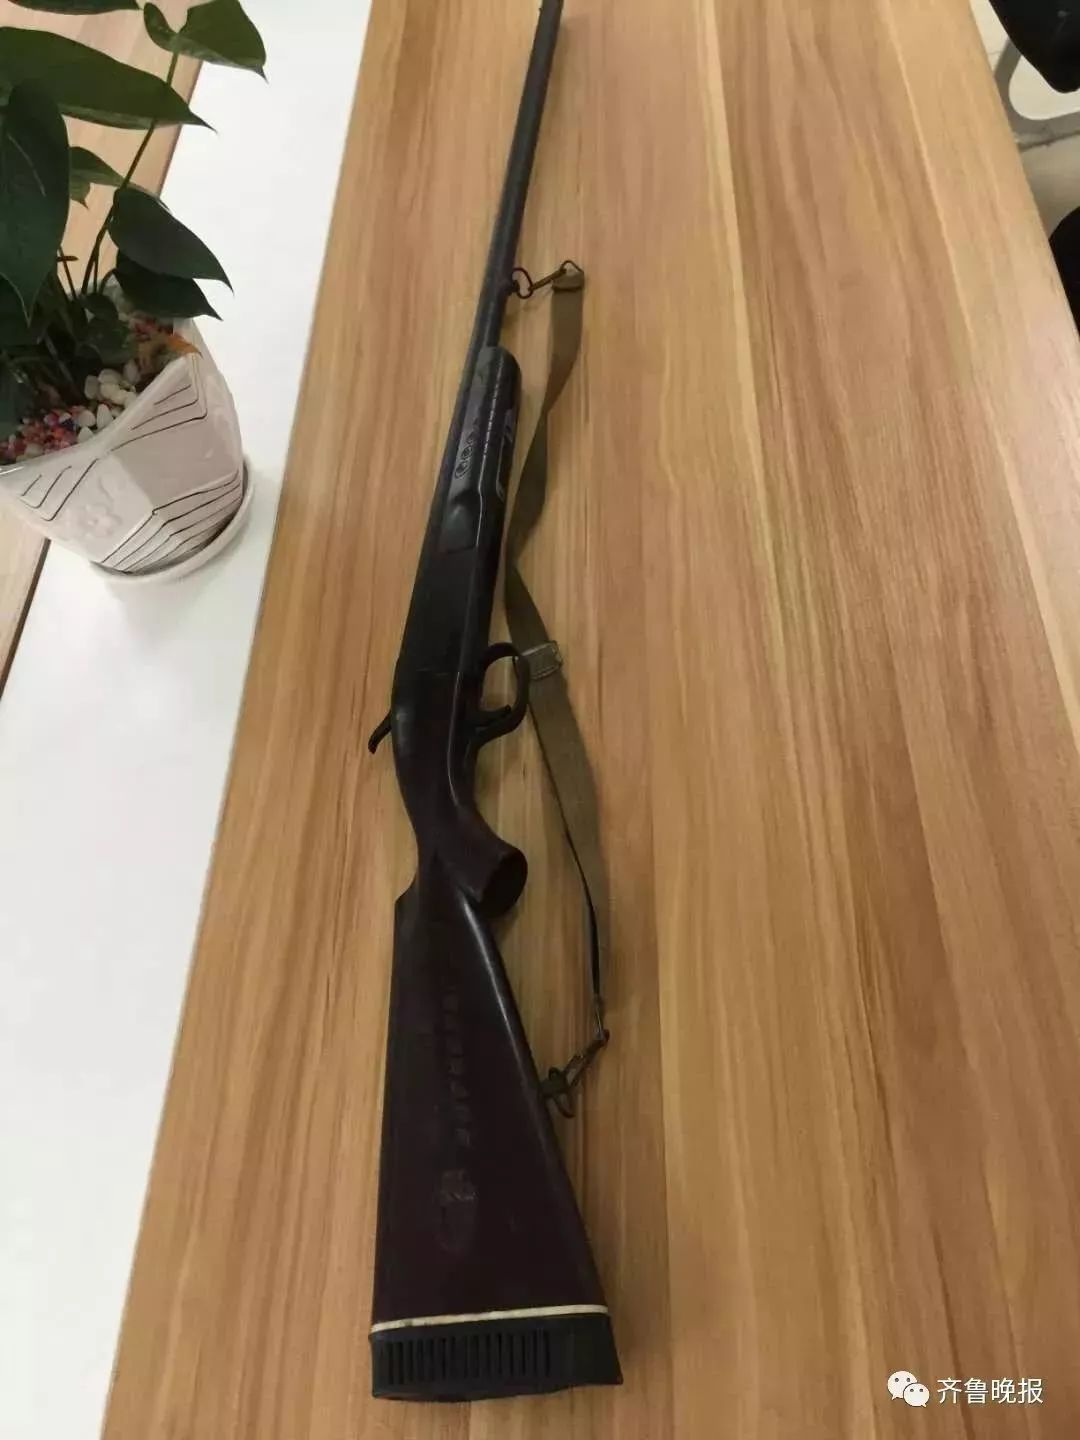 该枪为河南省西峡猎枪厂生产的制式单管猎枪,火药击发,经讯